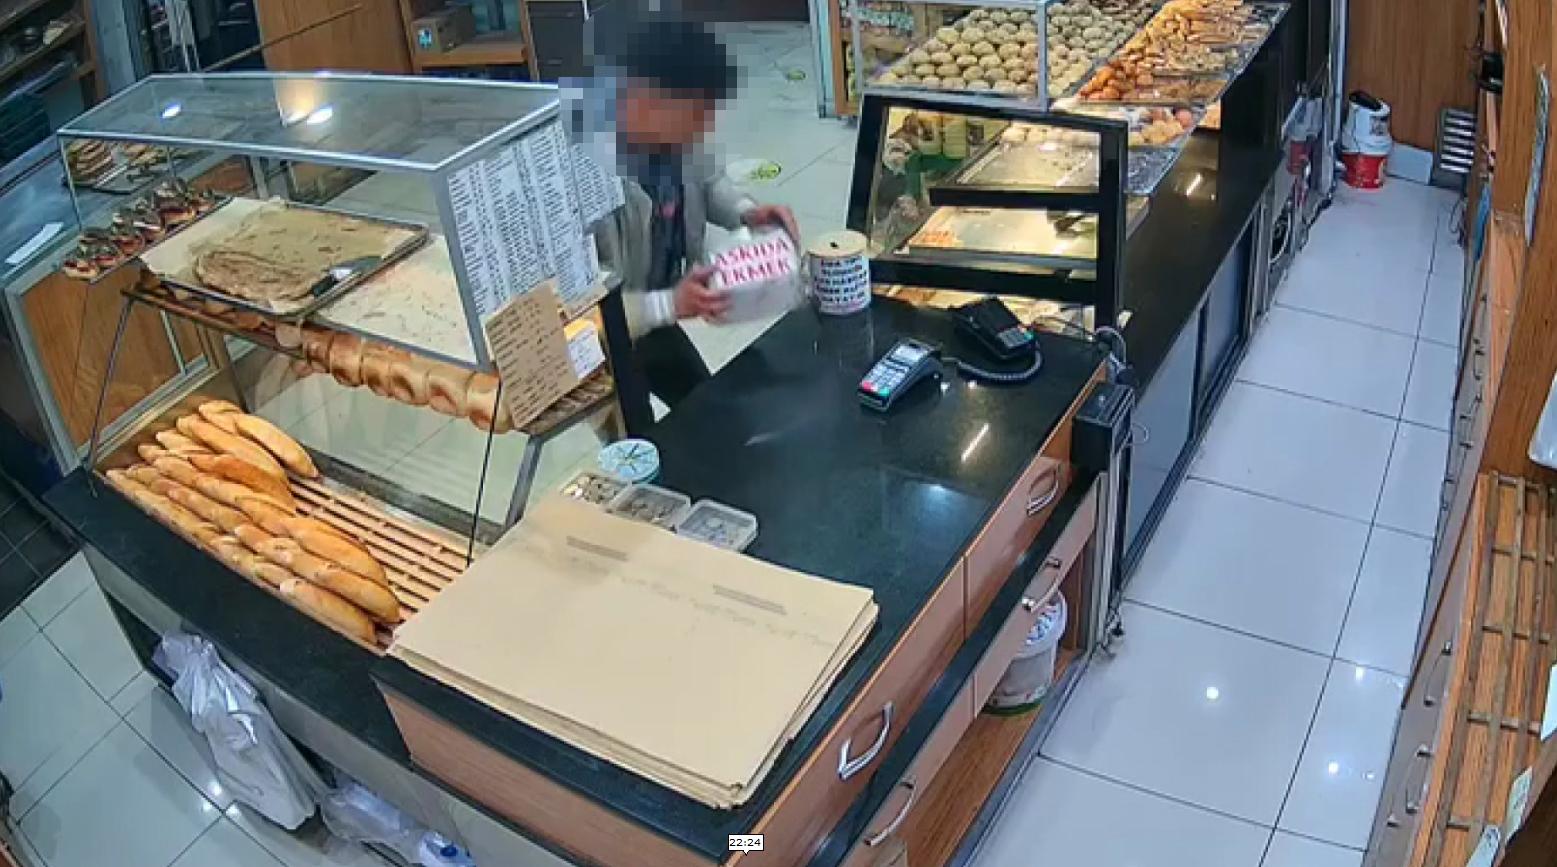 Biri 15 diğeri 19 yaşında! Askıda ekmek kumbarasını çalan şüphelilerden biri yakalandı